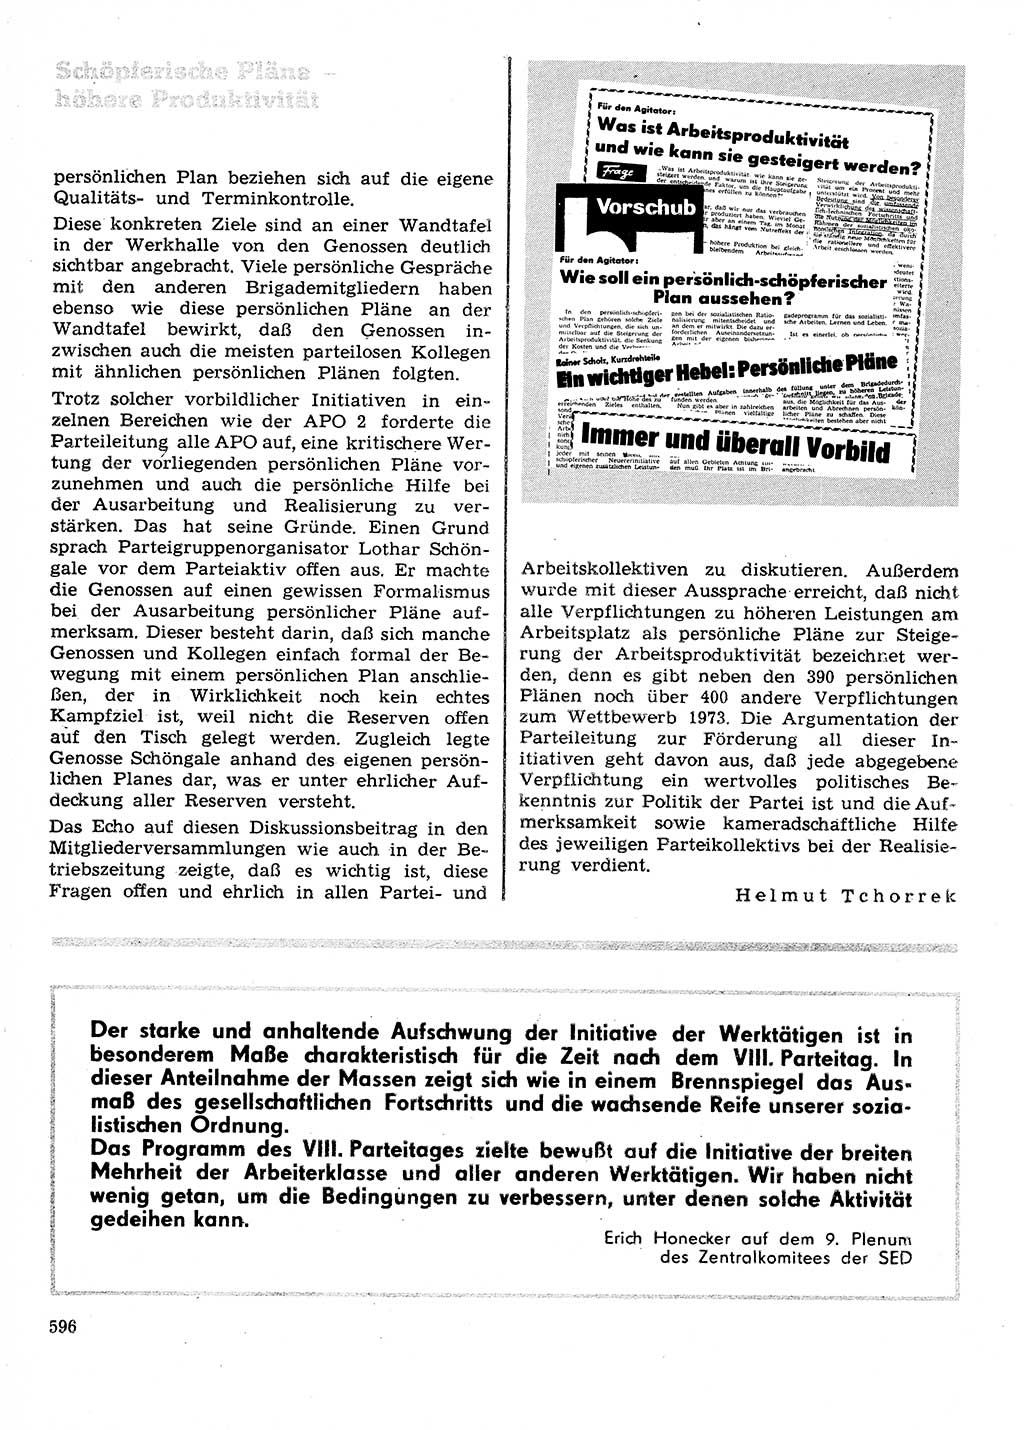 Neuer Weg (NW), Organ des Zentralkomitees (ZK) der SED (Sozialistische Einheitspartei Deutschlands) für Fragen des Parteilebens, 28. Jahrgang [Deutsche Demokratische Republik (DDR)] 1973, Seite 596 (NW ZK SED DDR 1973, S. 596)